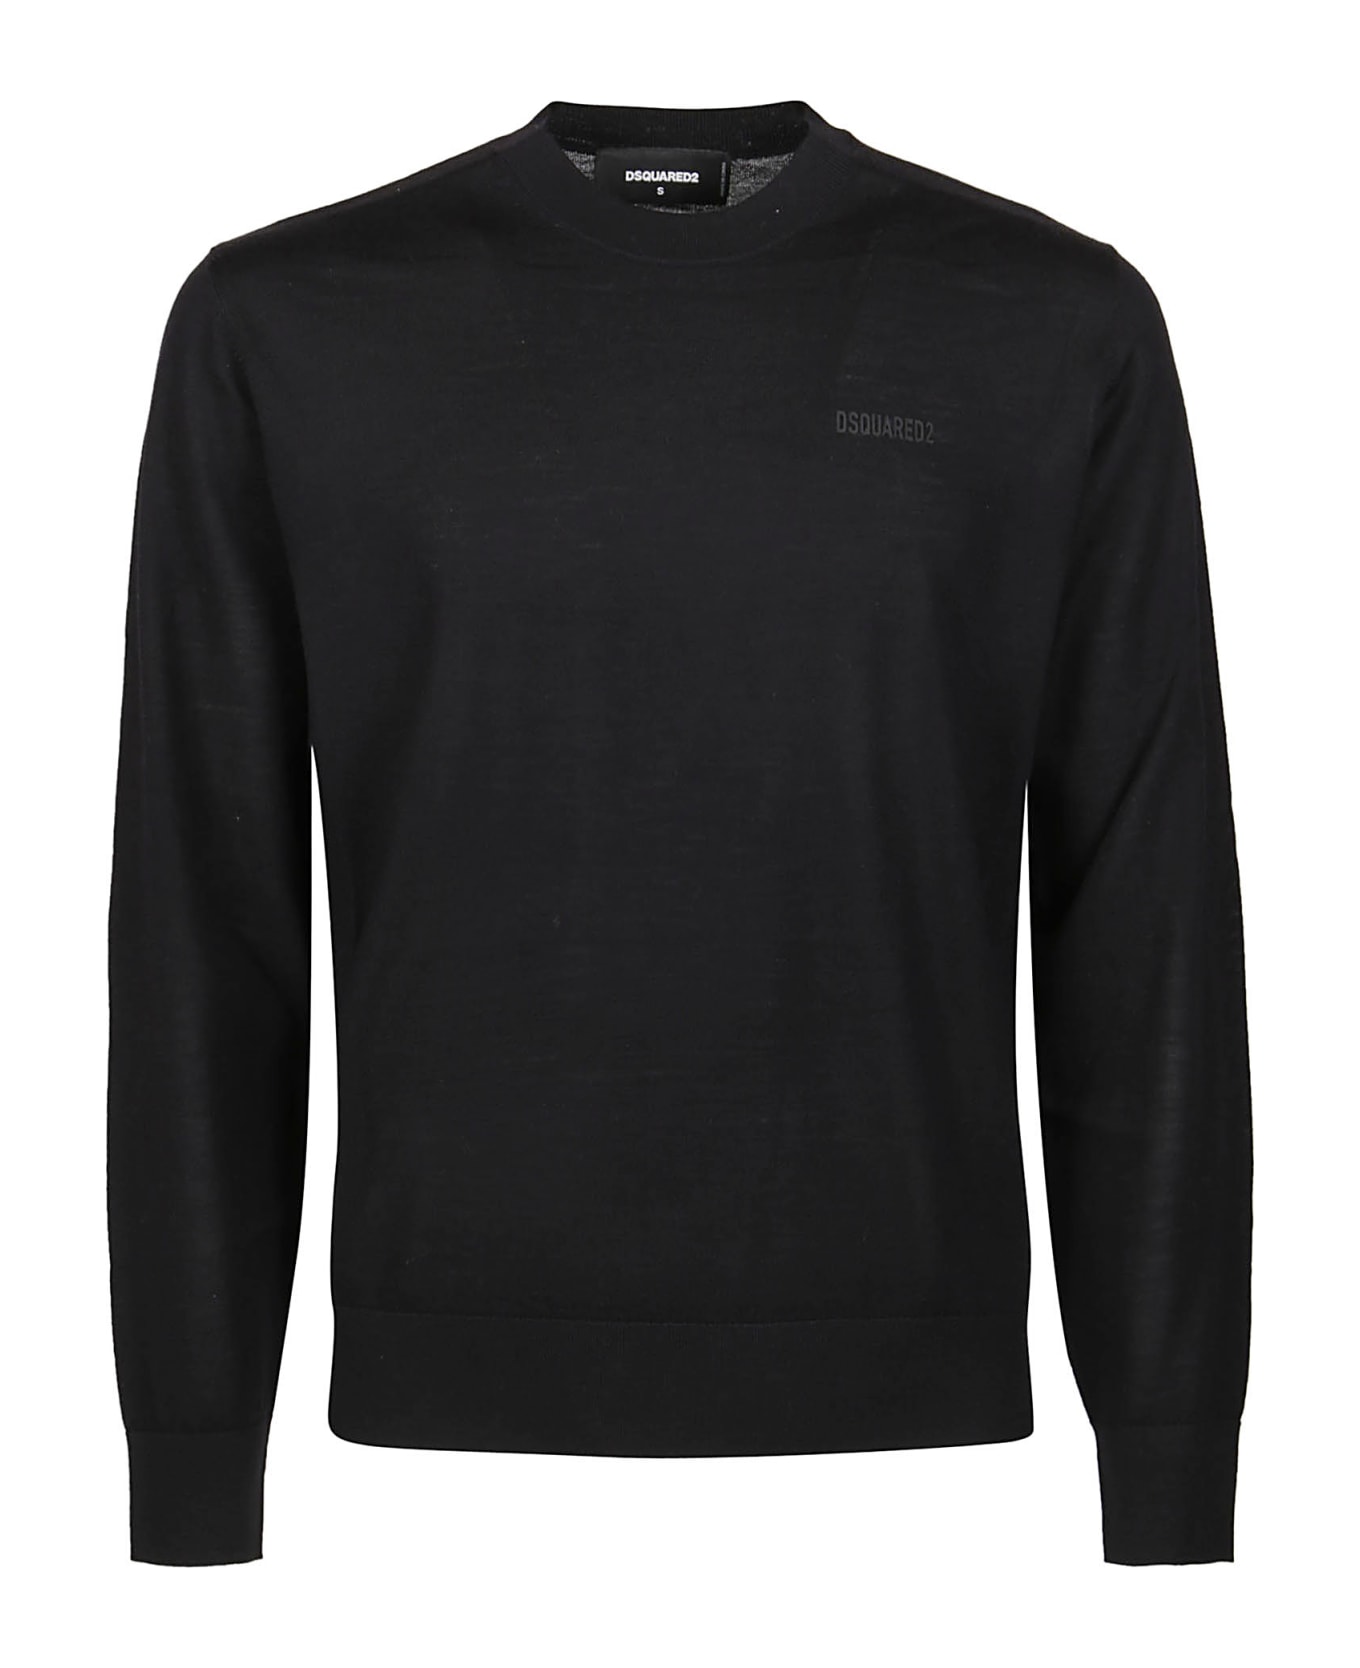 Dsquared2 Neon Sweater - Black